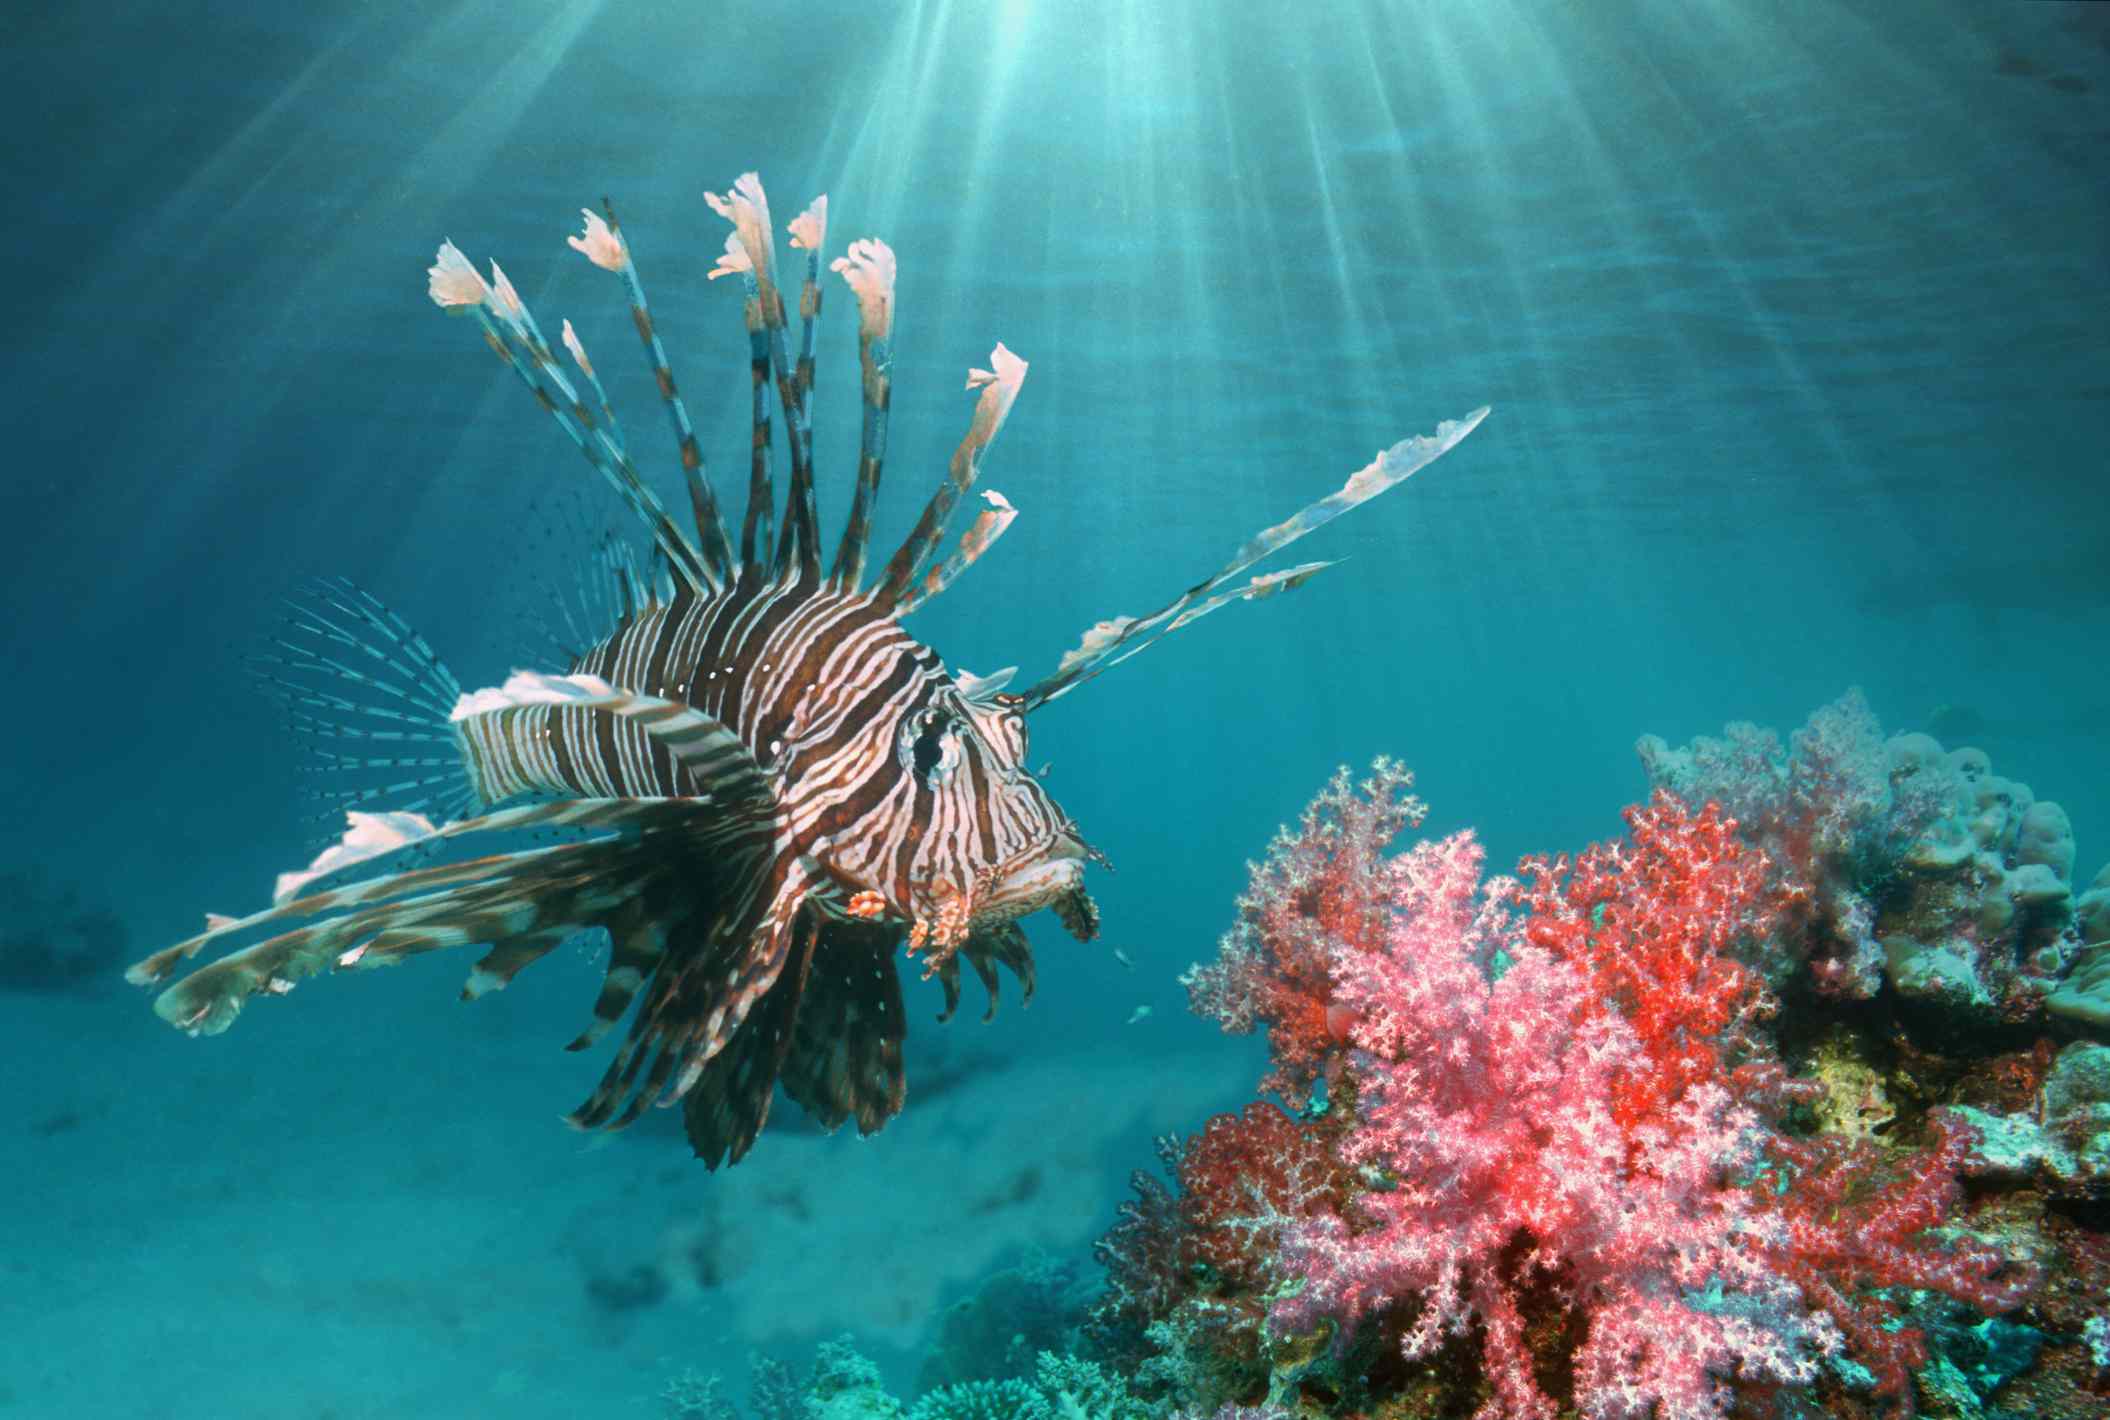 Un pez león nadando entre corales rosas y rojos